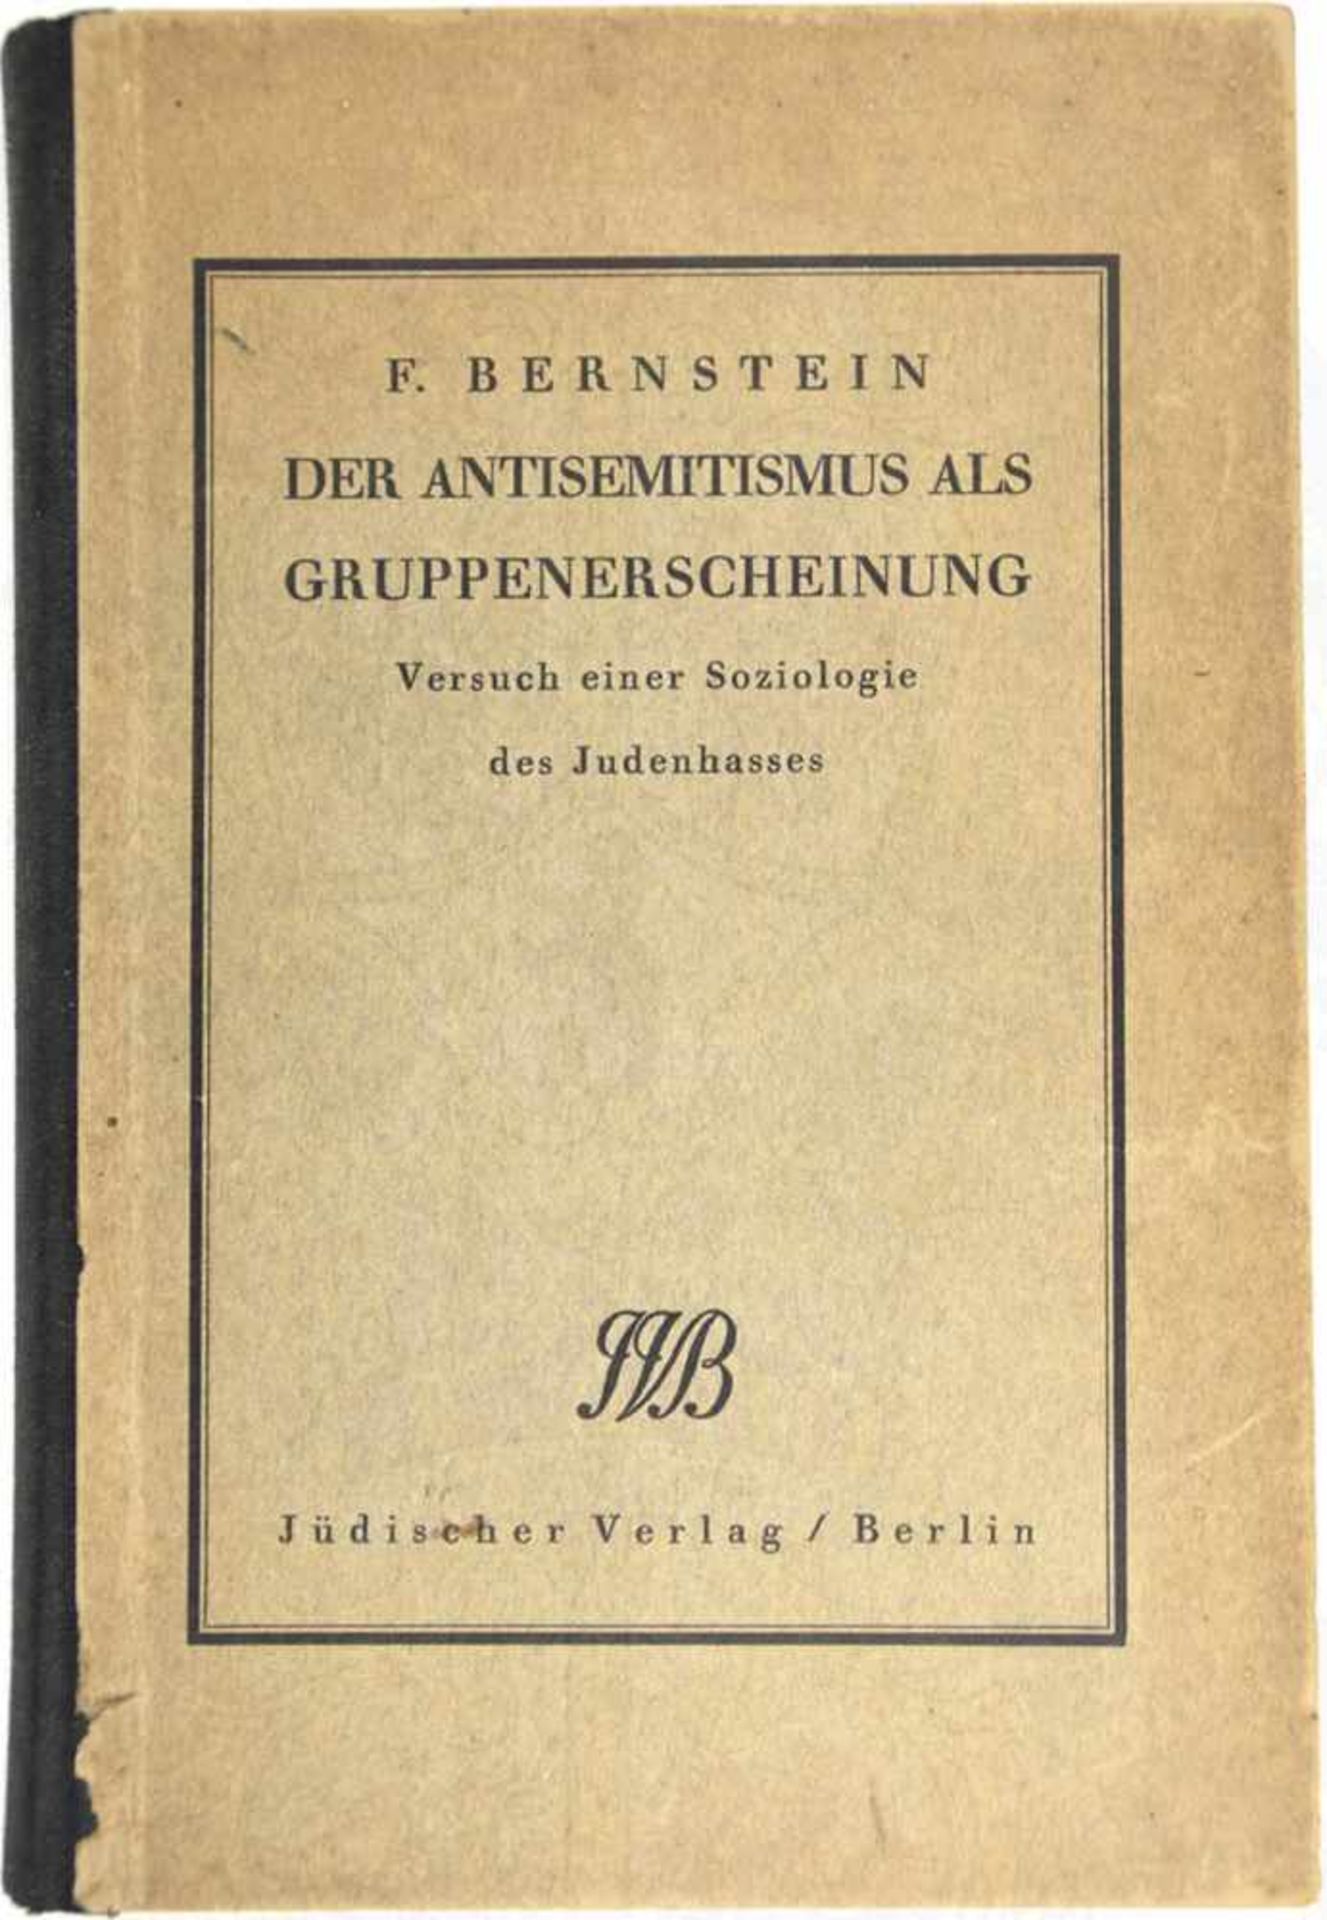 DER ANTISEMITISMUS ALS GRUPPENERSCHEINUNG, „Versuch einer Soziologie des Judenhasses“, F. Bernstein,